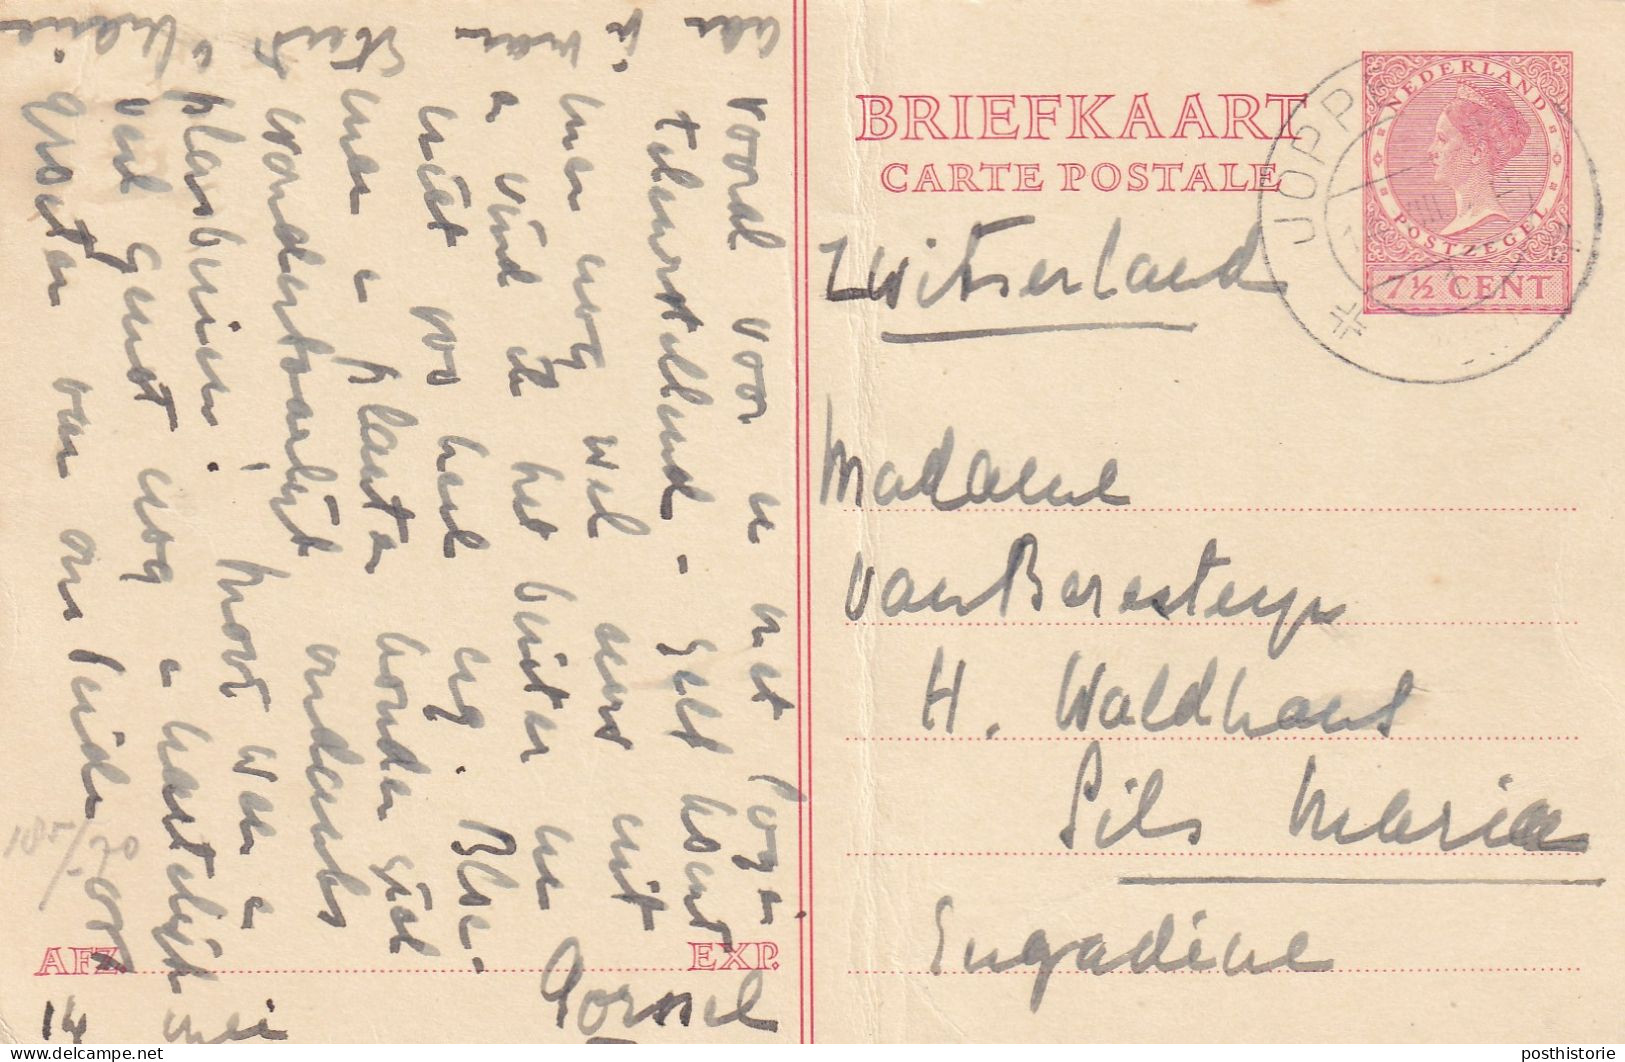 17 verschillende gebruikte briefkaarten 1908 / 1947